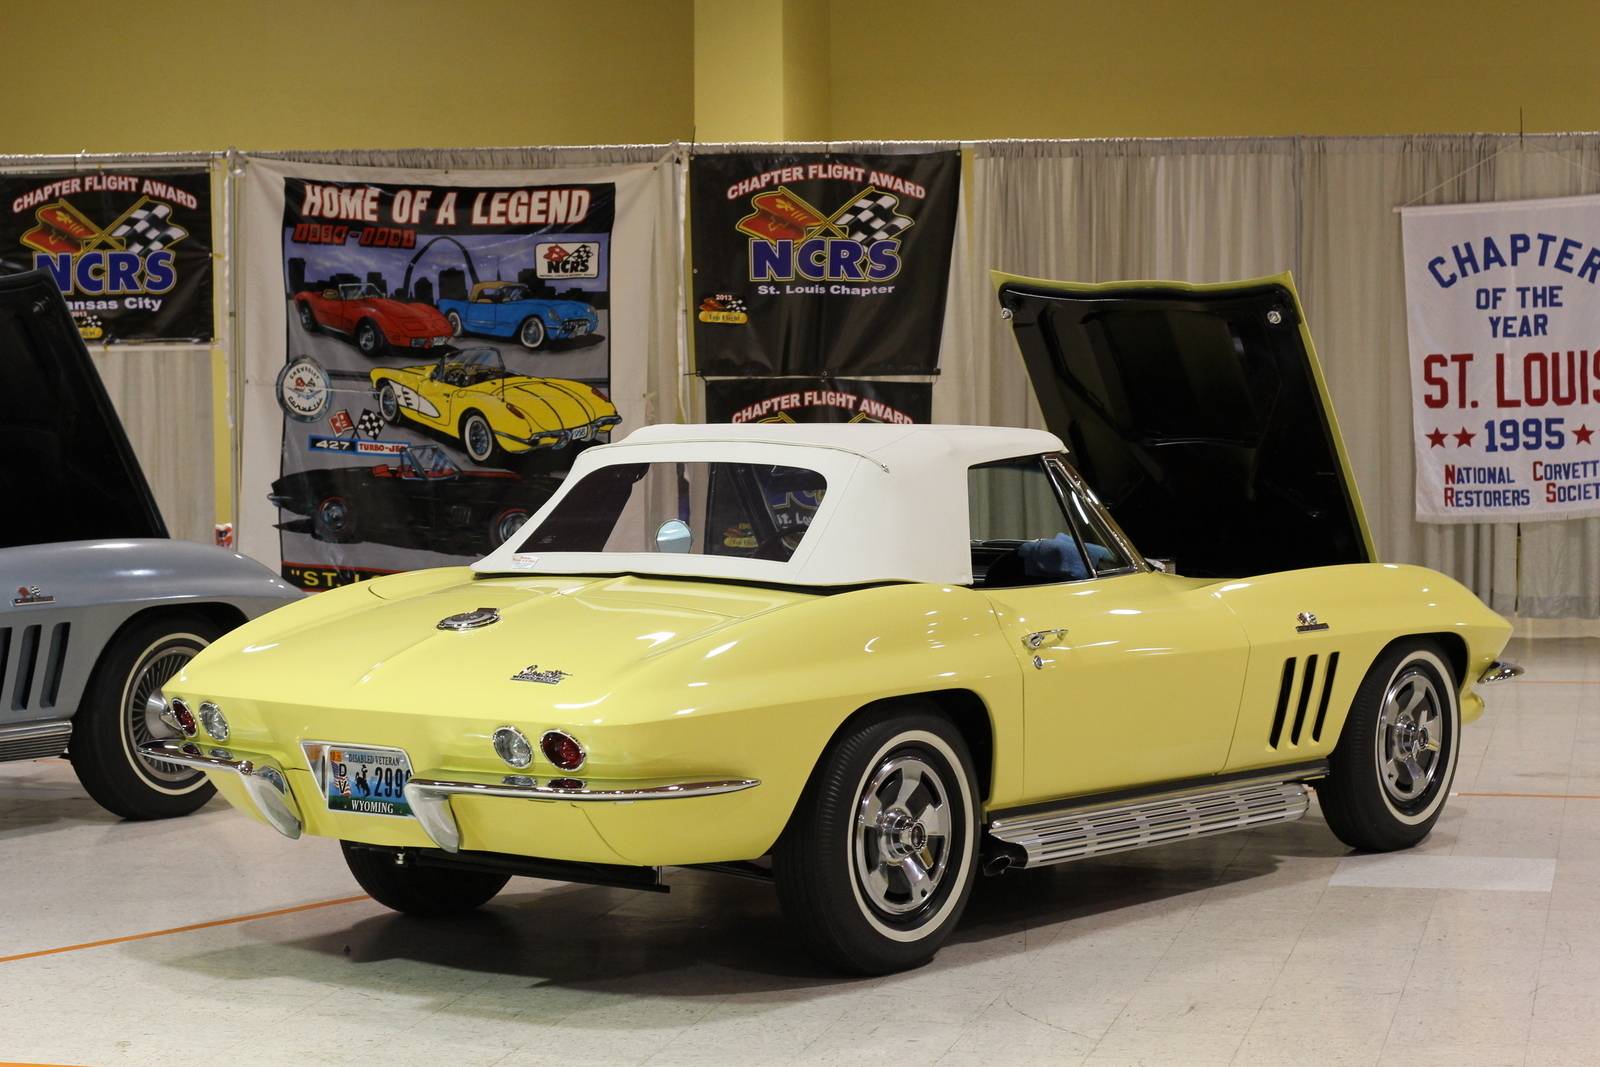 1966 Chevrolet Corvette 2